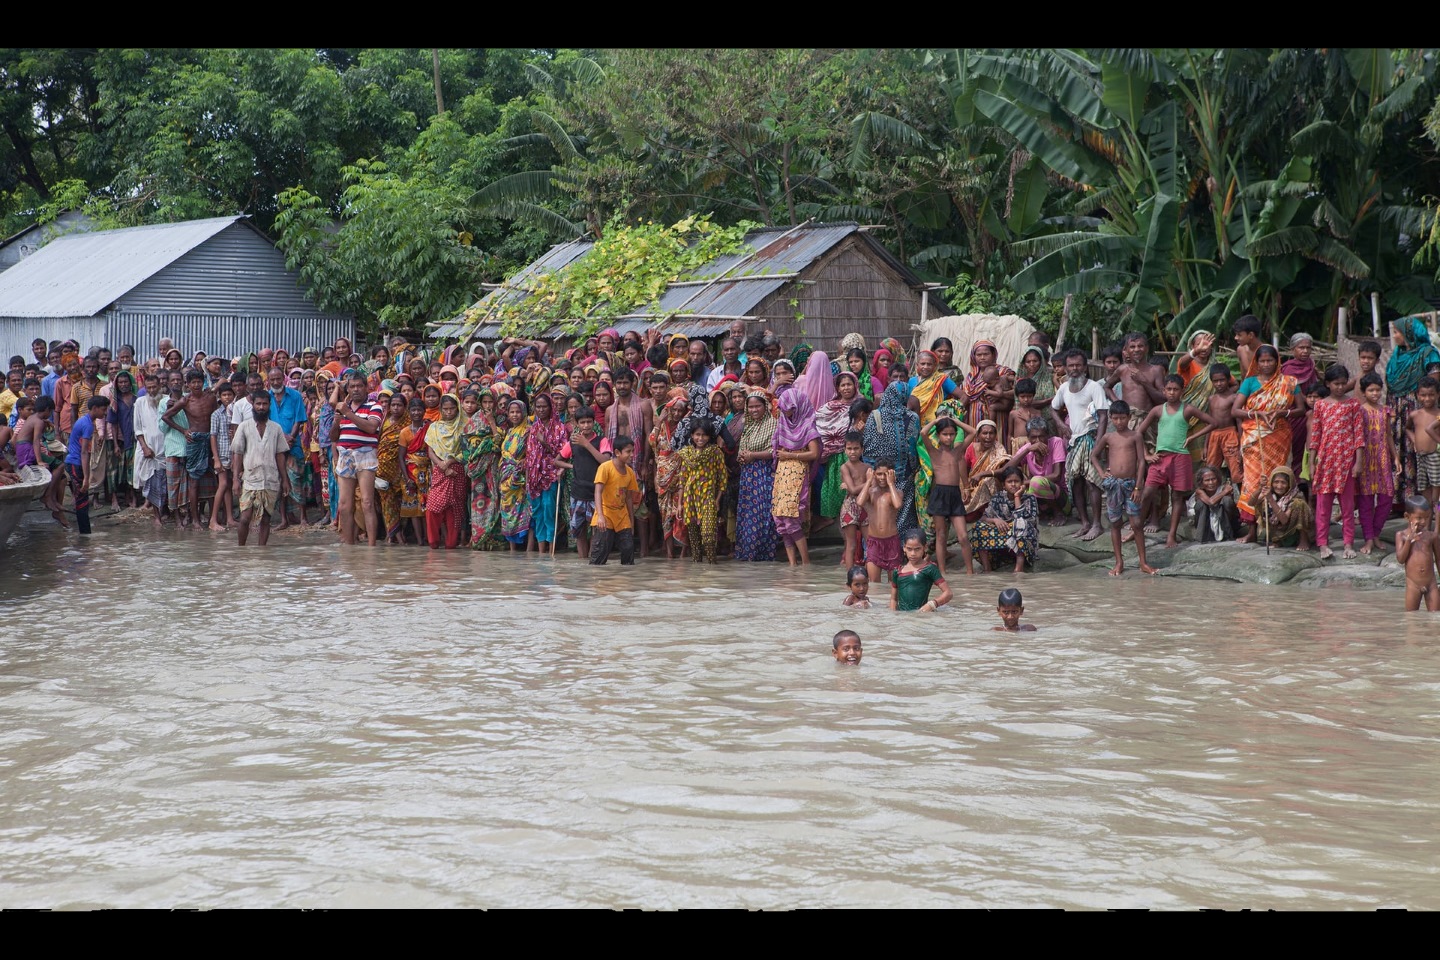 Жители деревни ждут лодку, чтобы спастись от наводнения в июле 2016 года в Ислампуре, Джамалпуре, Бангладеш. Бангладеш является одним из самых уязвимых мест в мире из-за повышения уровня моря, которое, как ожидается, к 2050 году приведет к тому, что десятки миллионов людей останутся без крова. Фото: Пробал Рашид